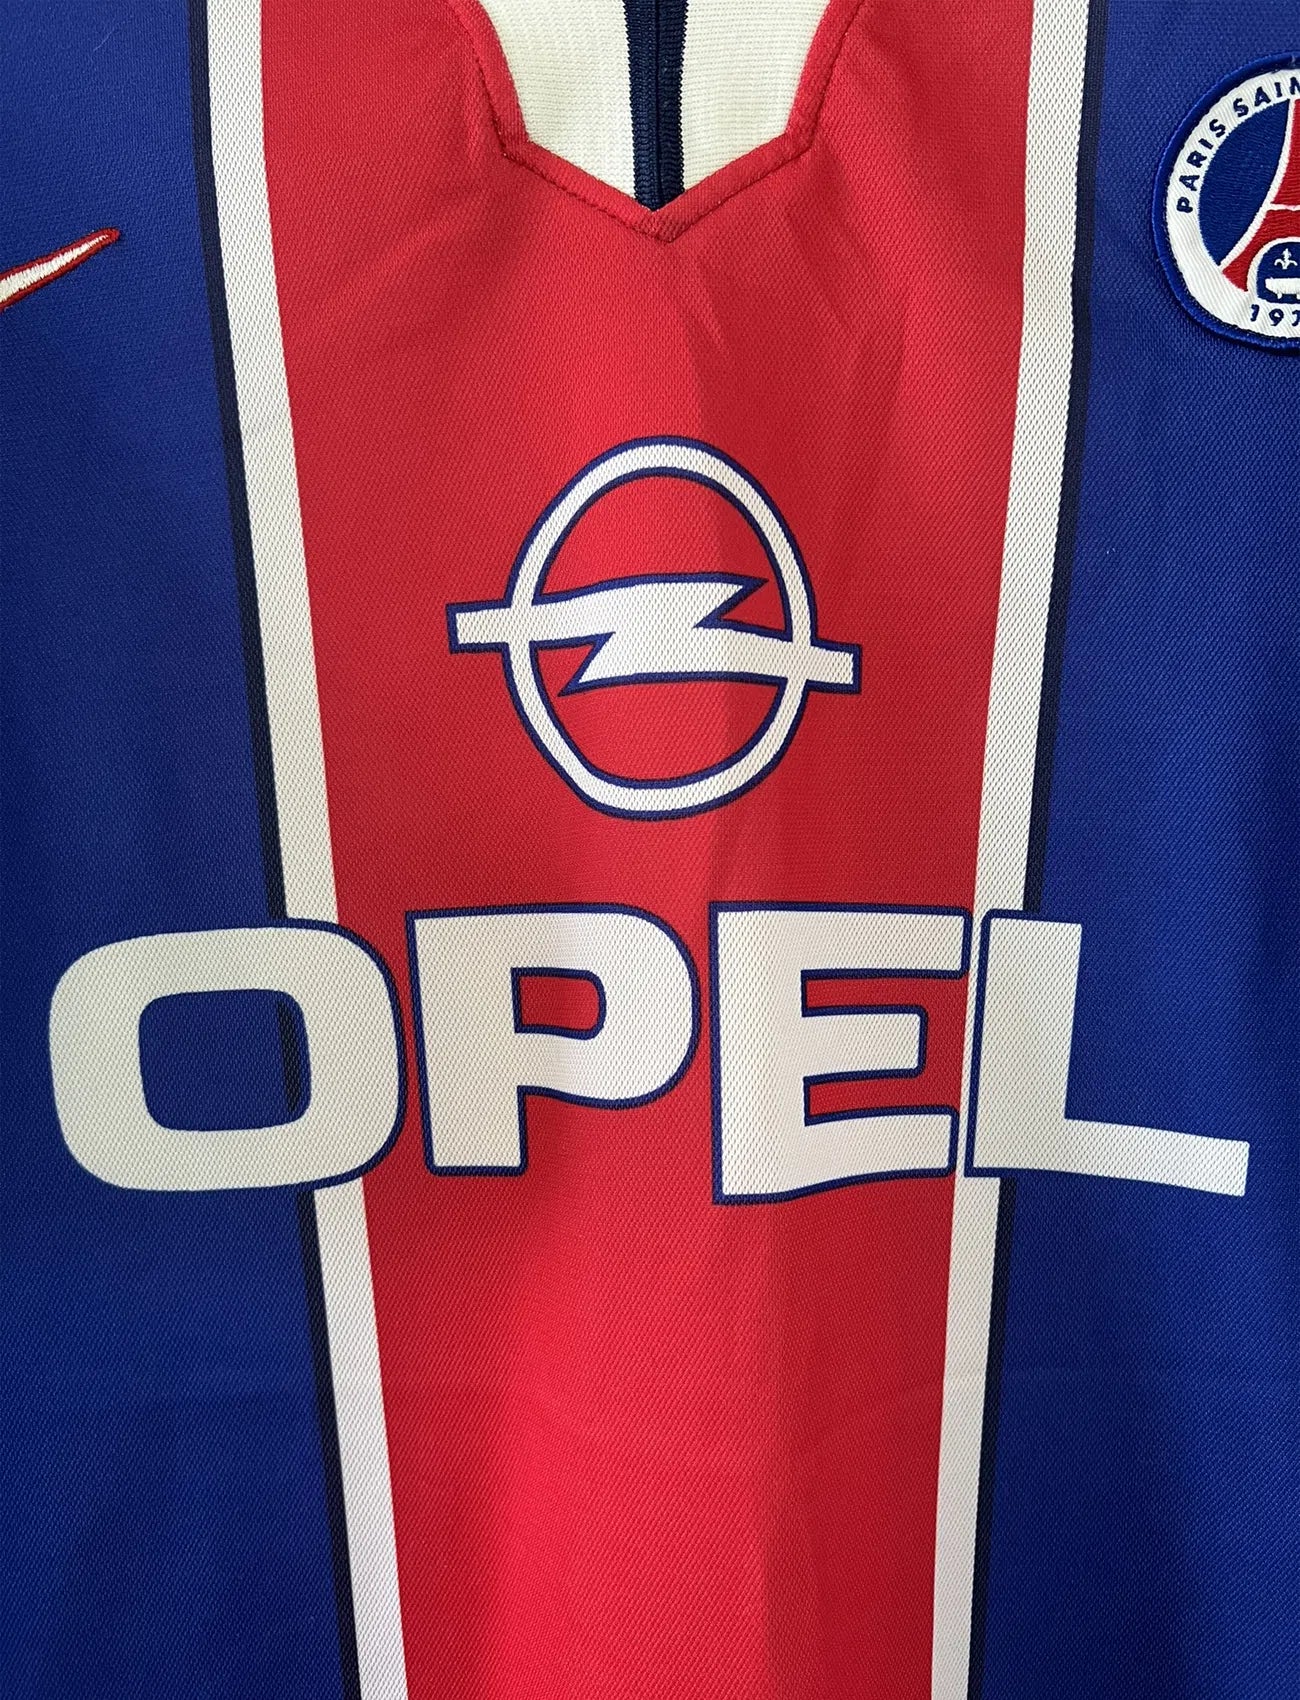 Maillot de foot vintage bleu blanc et rouge du PSG de la saison 1997/1998. On peut retrouver l'équipementier nike et le sponsor Opel. Il s'agit d'un maillot authentique.